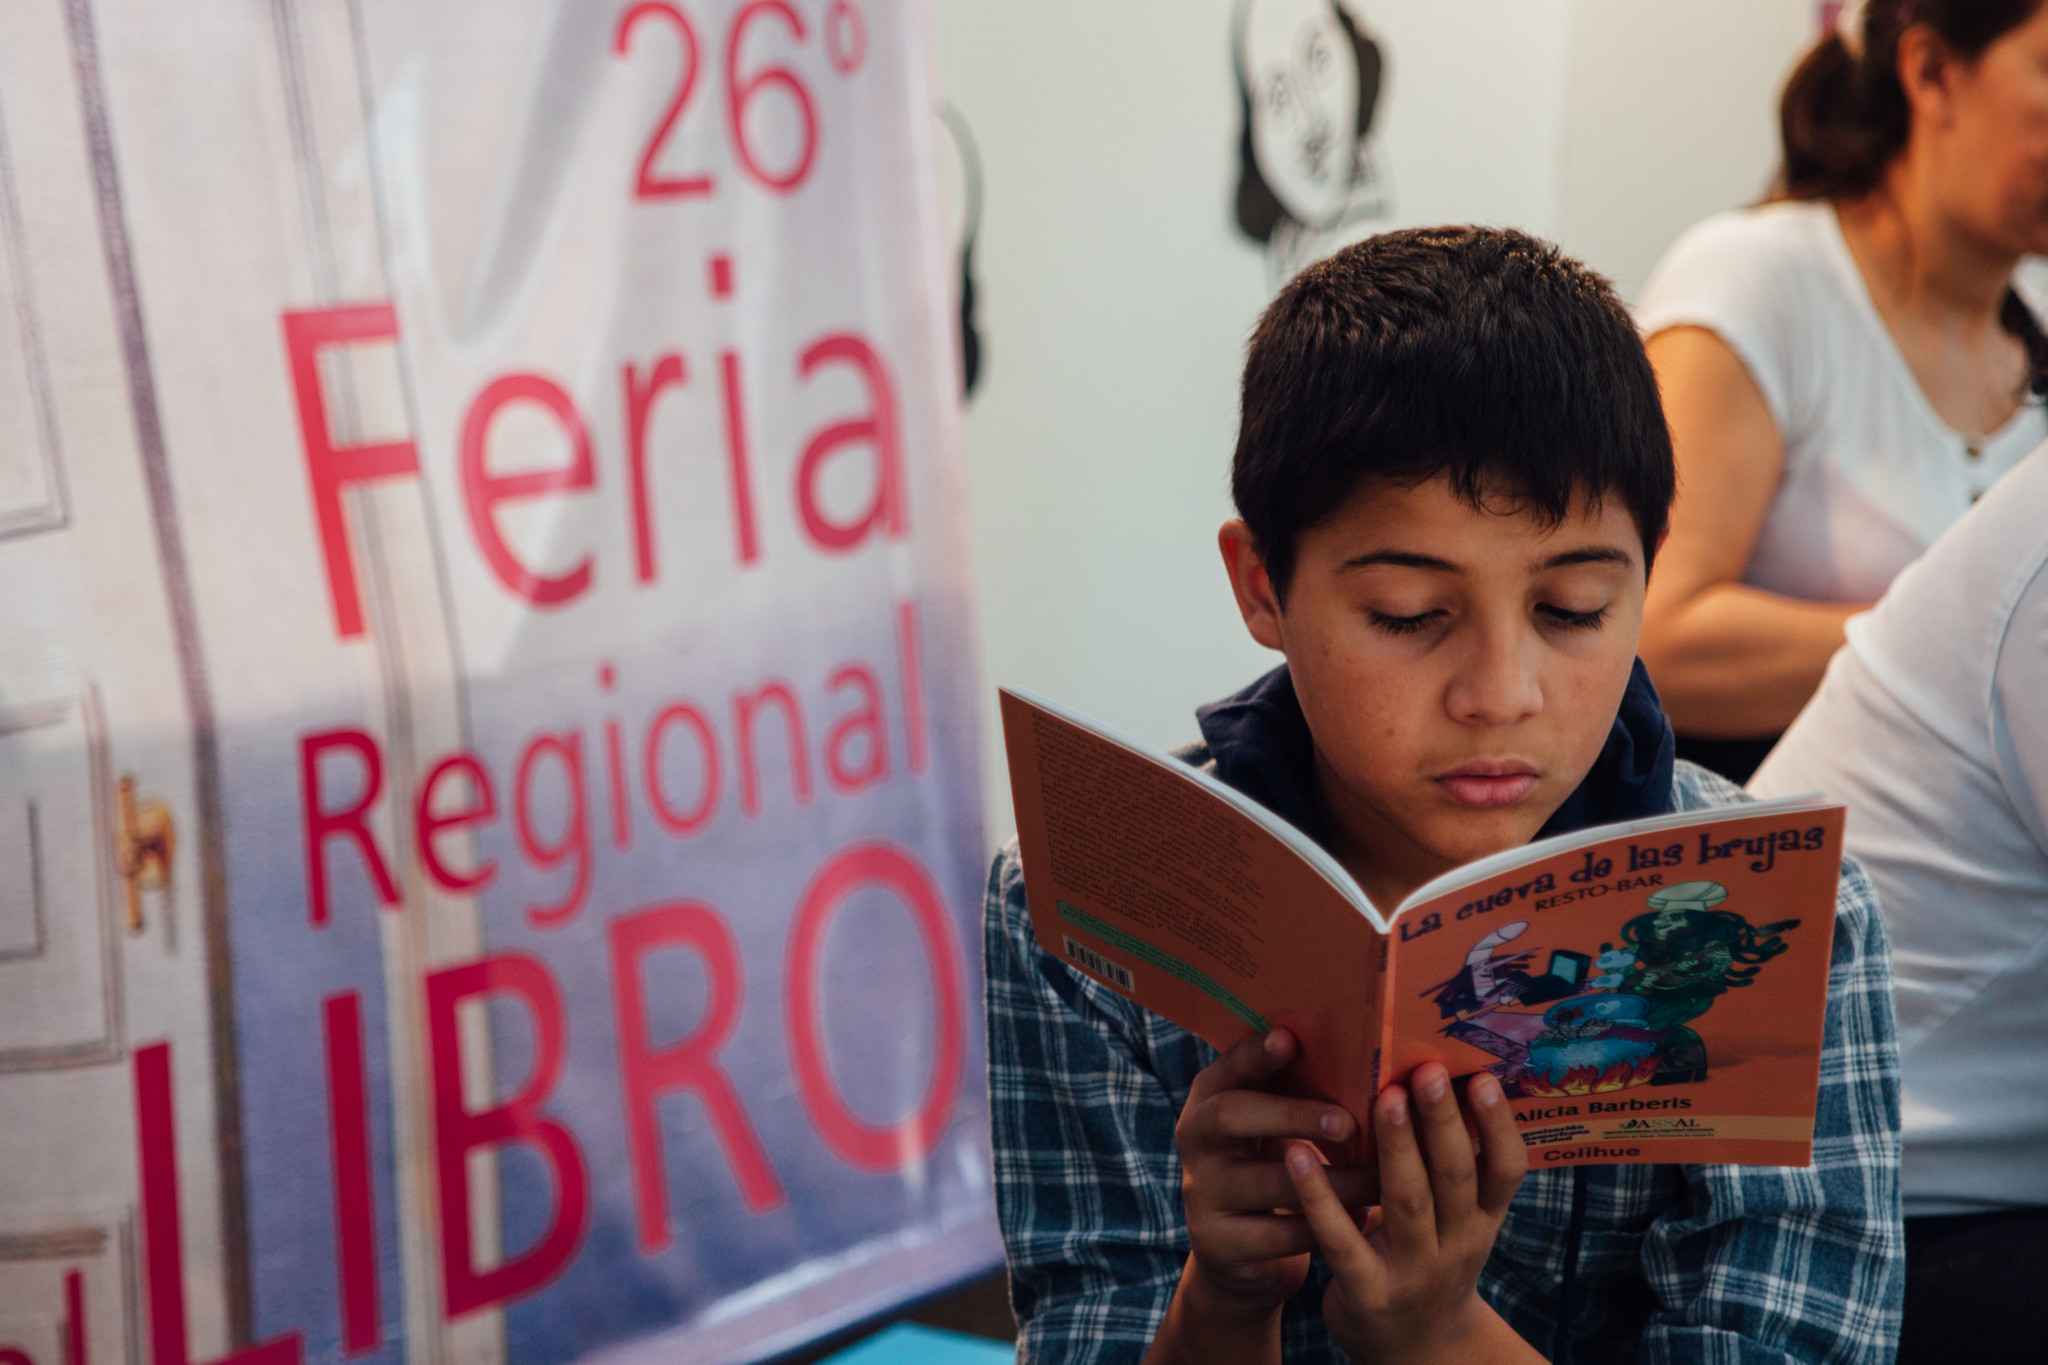 Renovada Feria Regional del Libro en las Dos Rutas